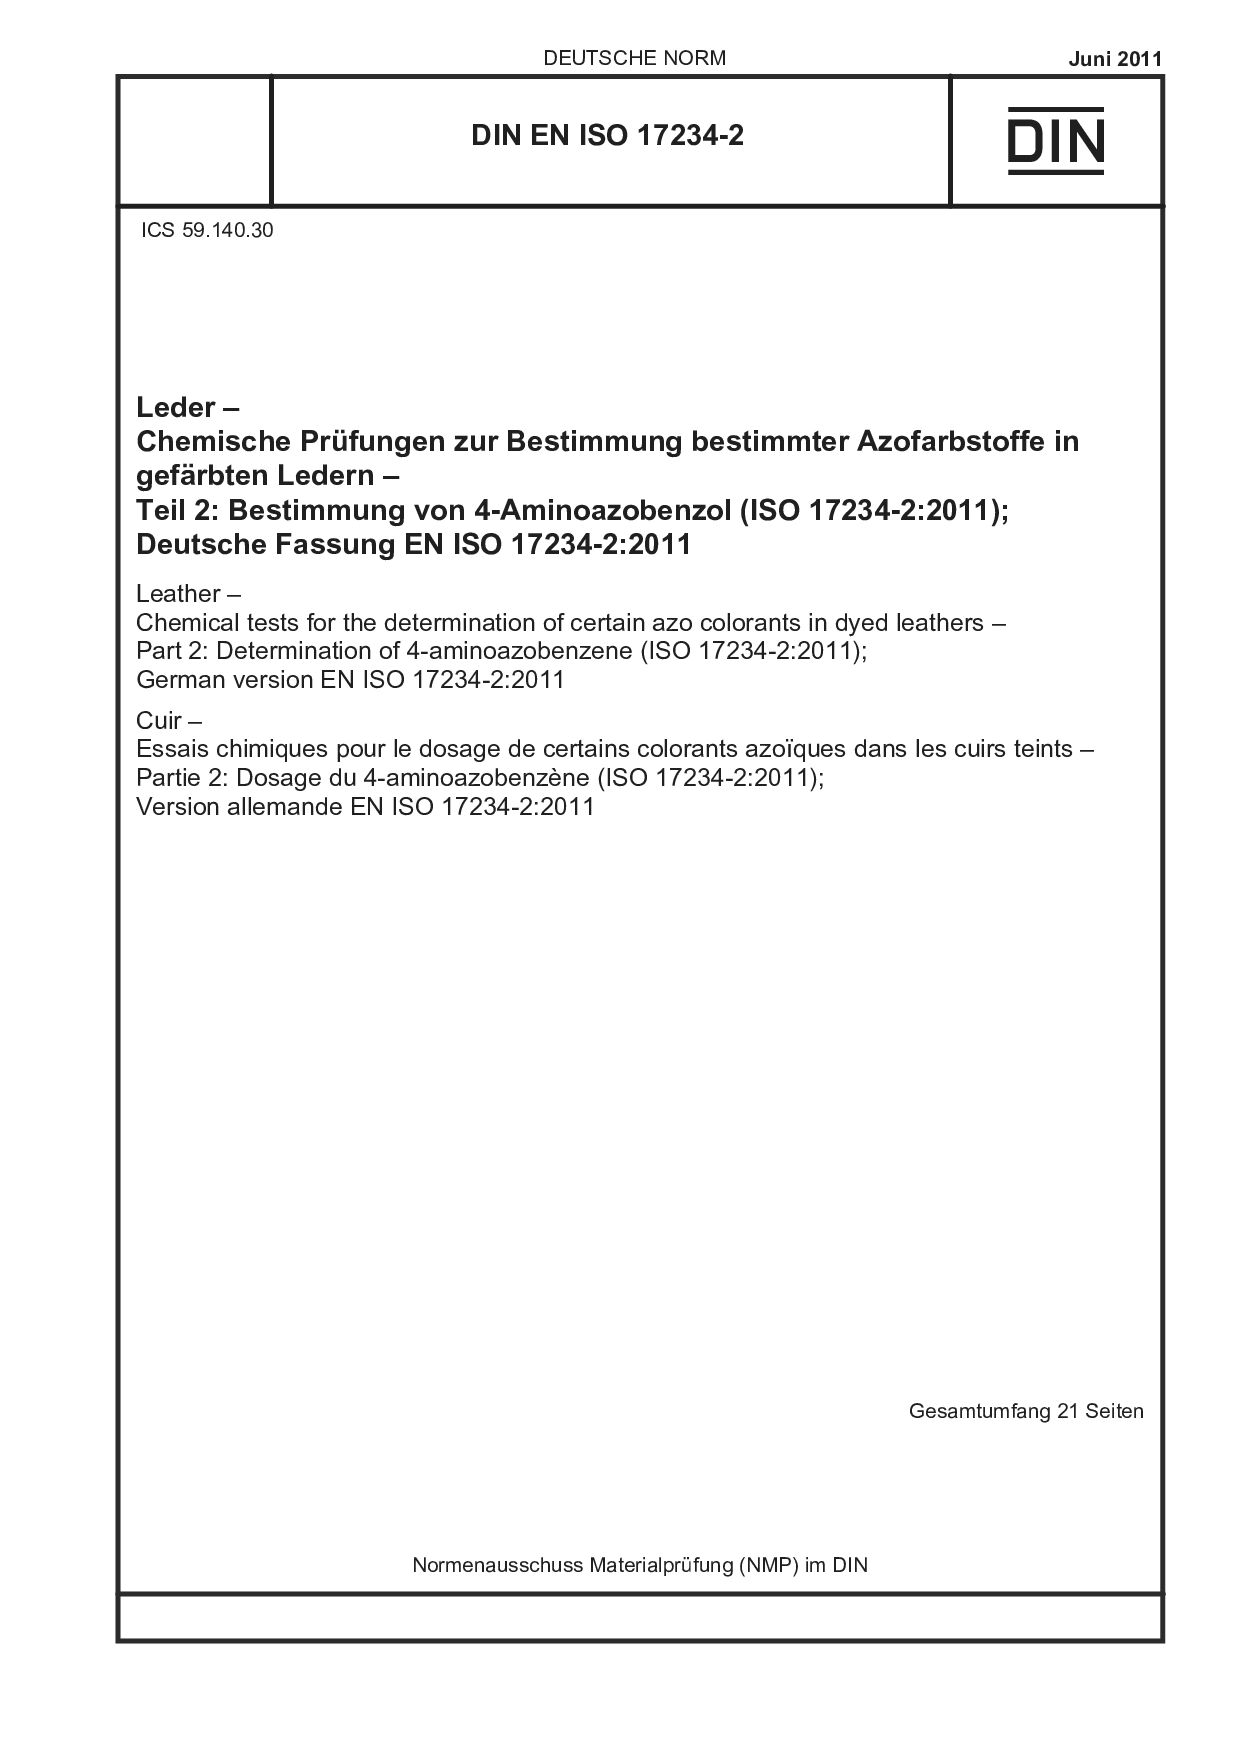 DIN EN ISO 17234-2:2011封面图